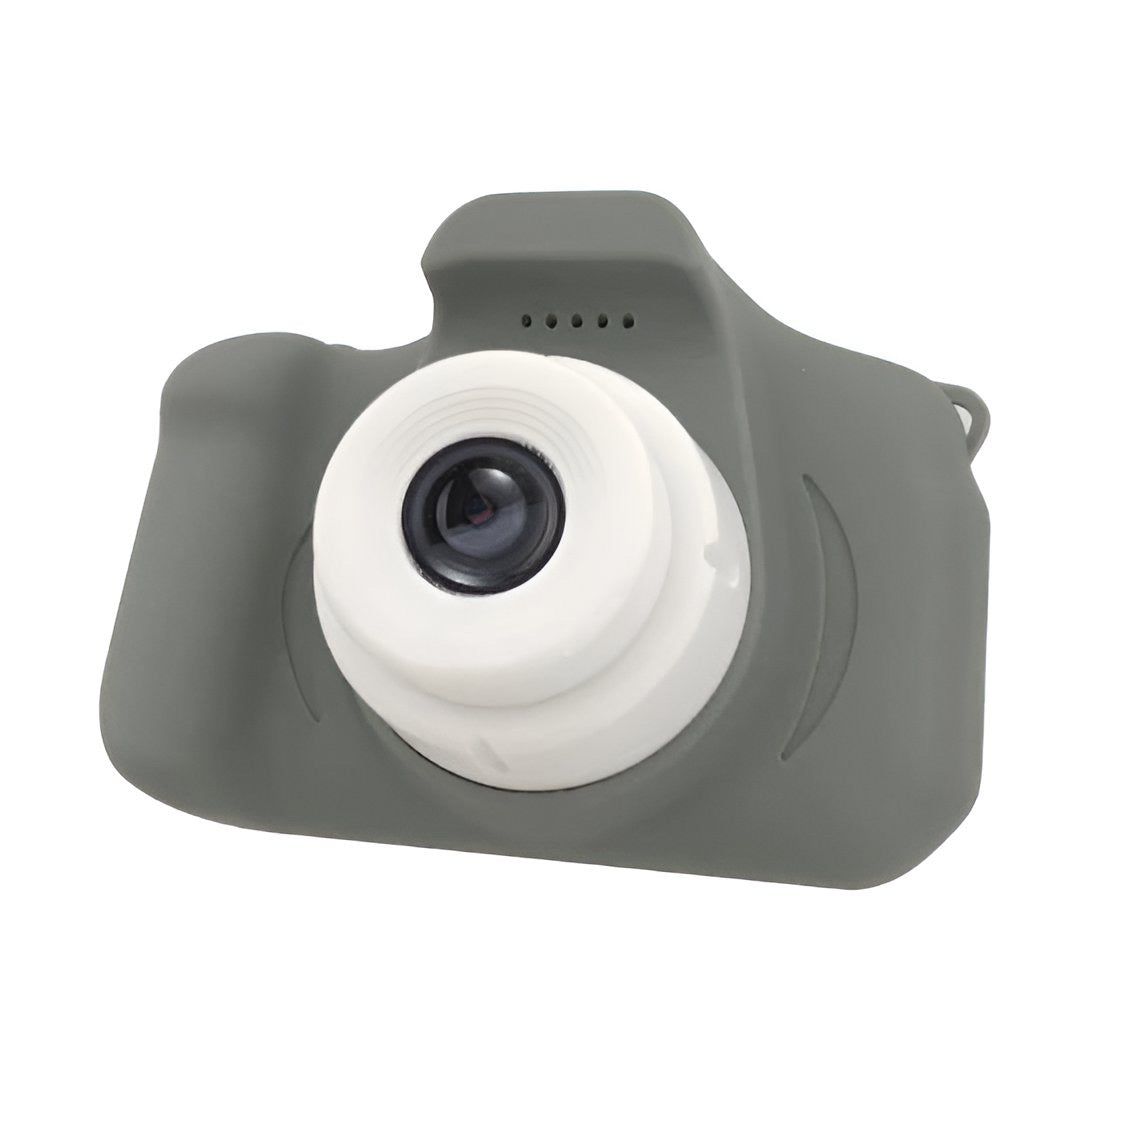 PocketPixel™ Mini Digital Camera